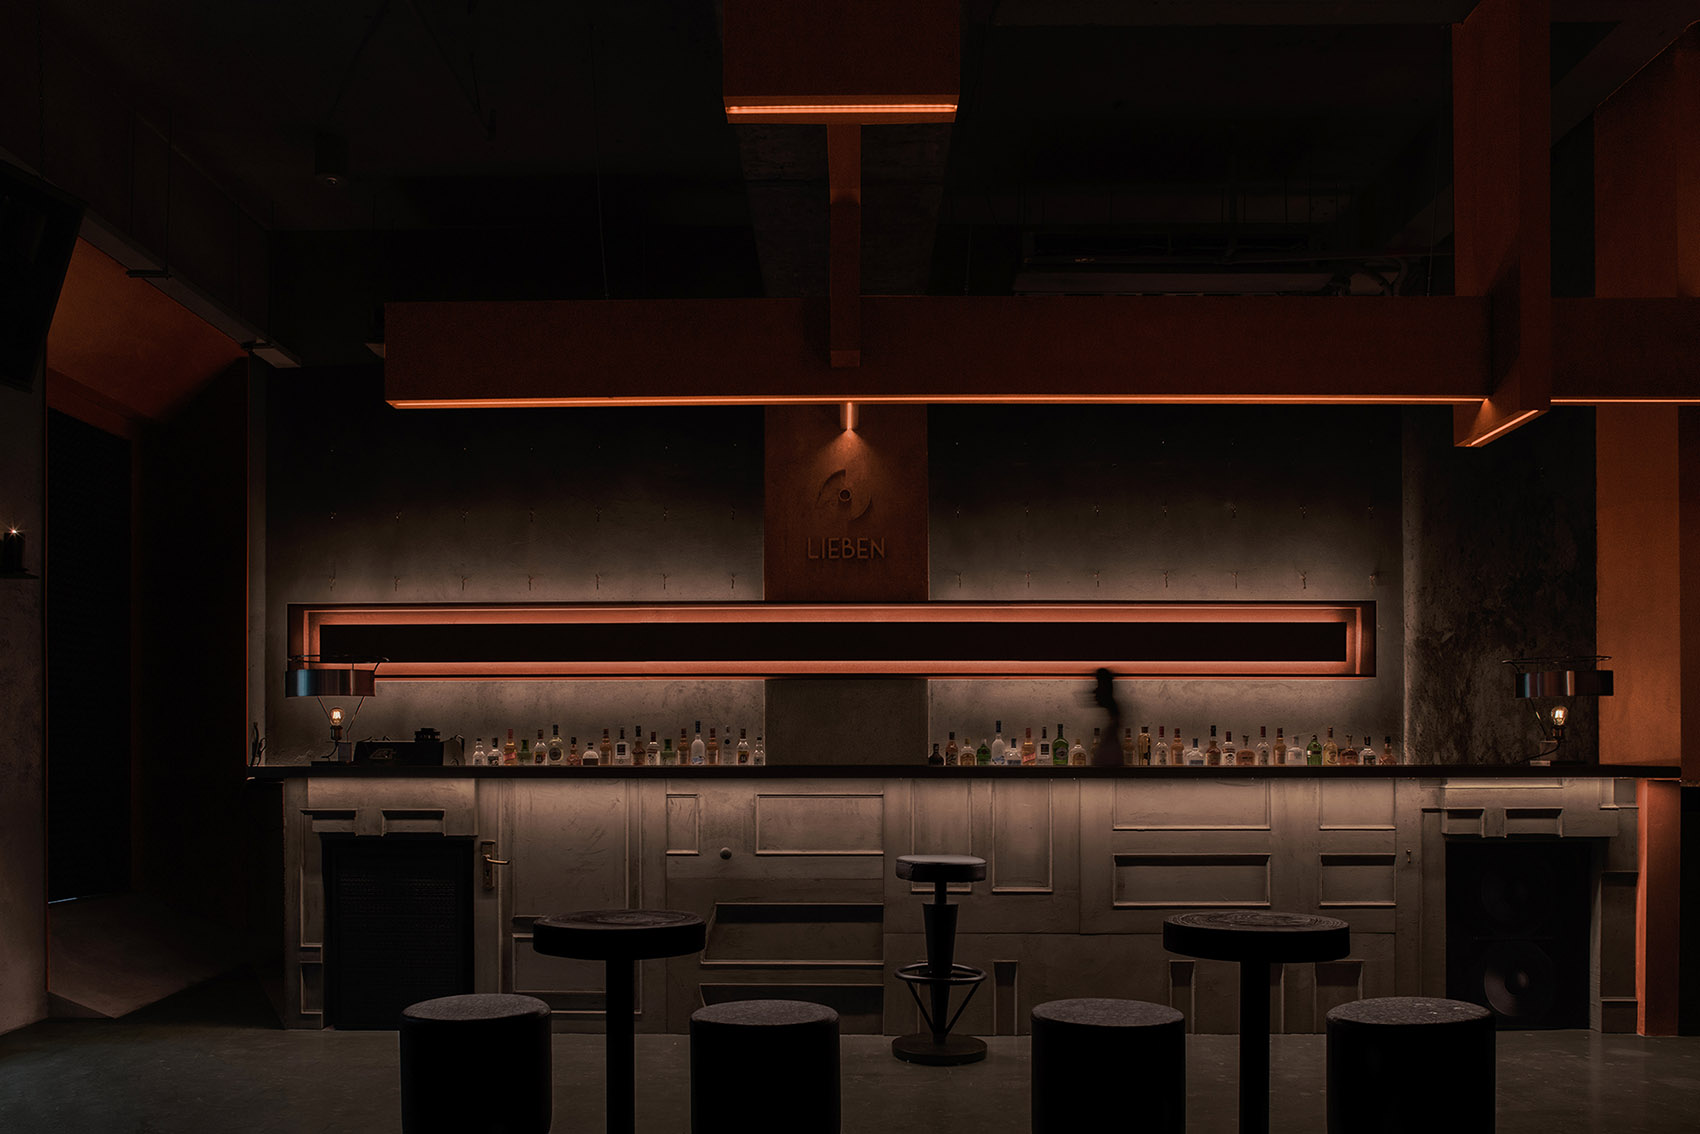 酒吧夜店2022精酿啤酒吧音乐餐吧酒屋室内设计